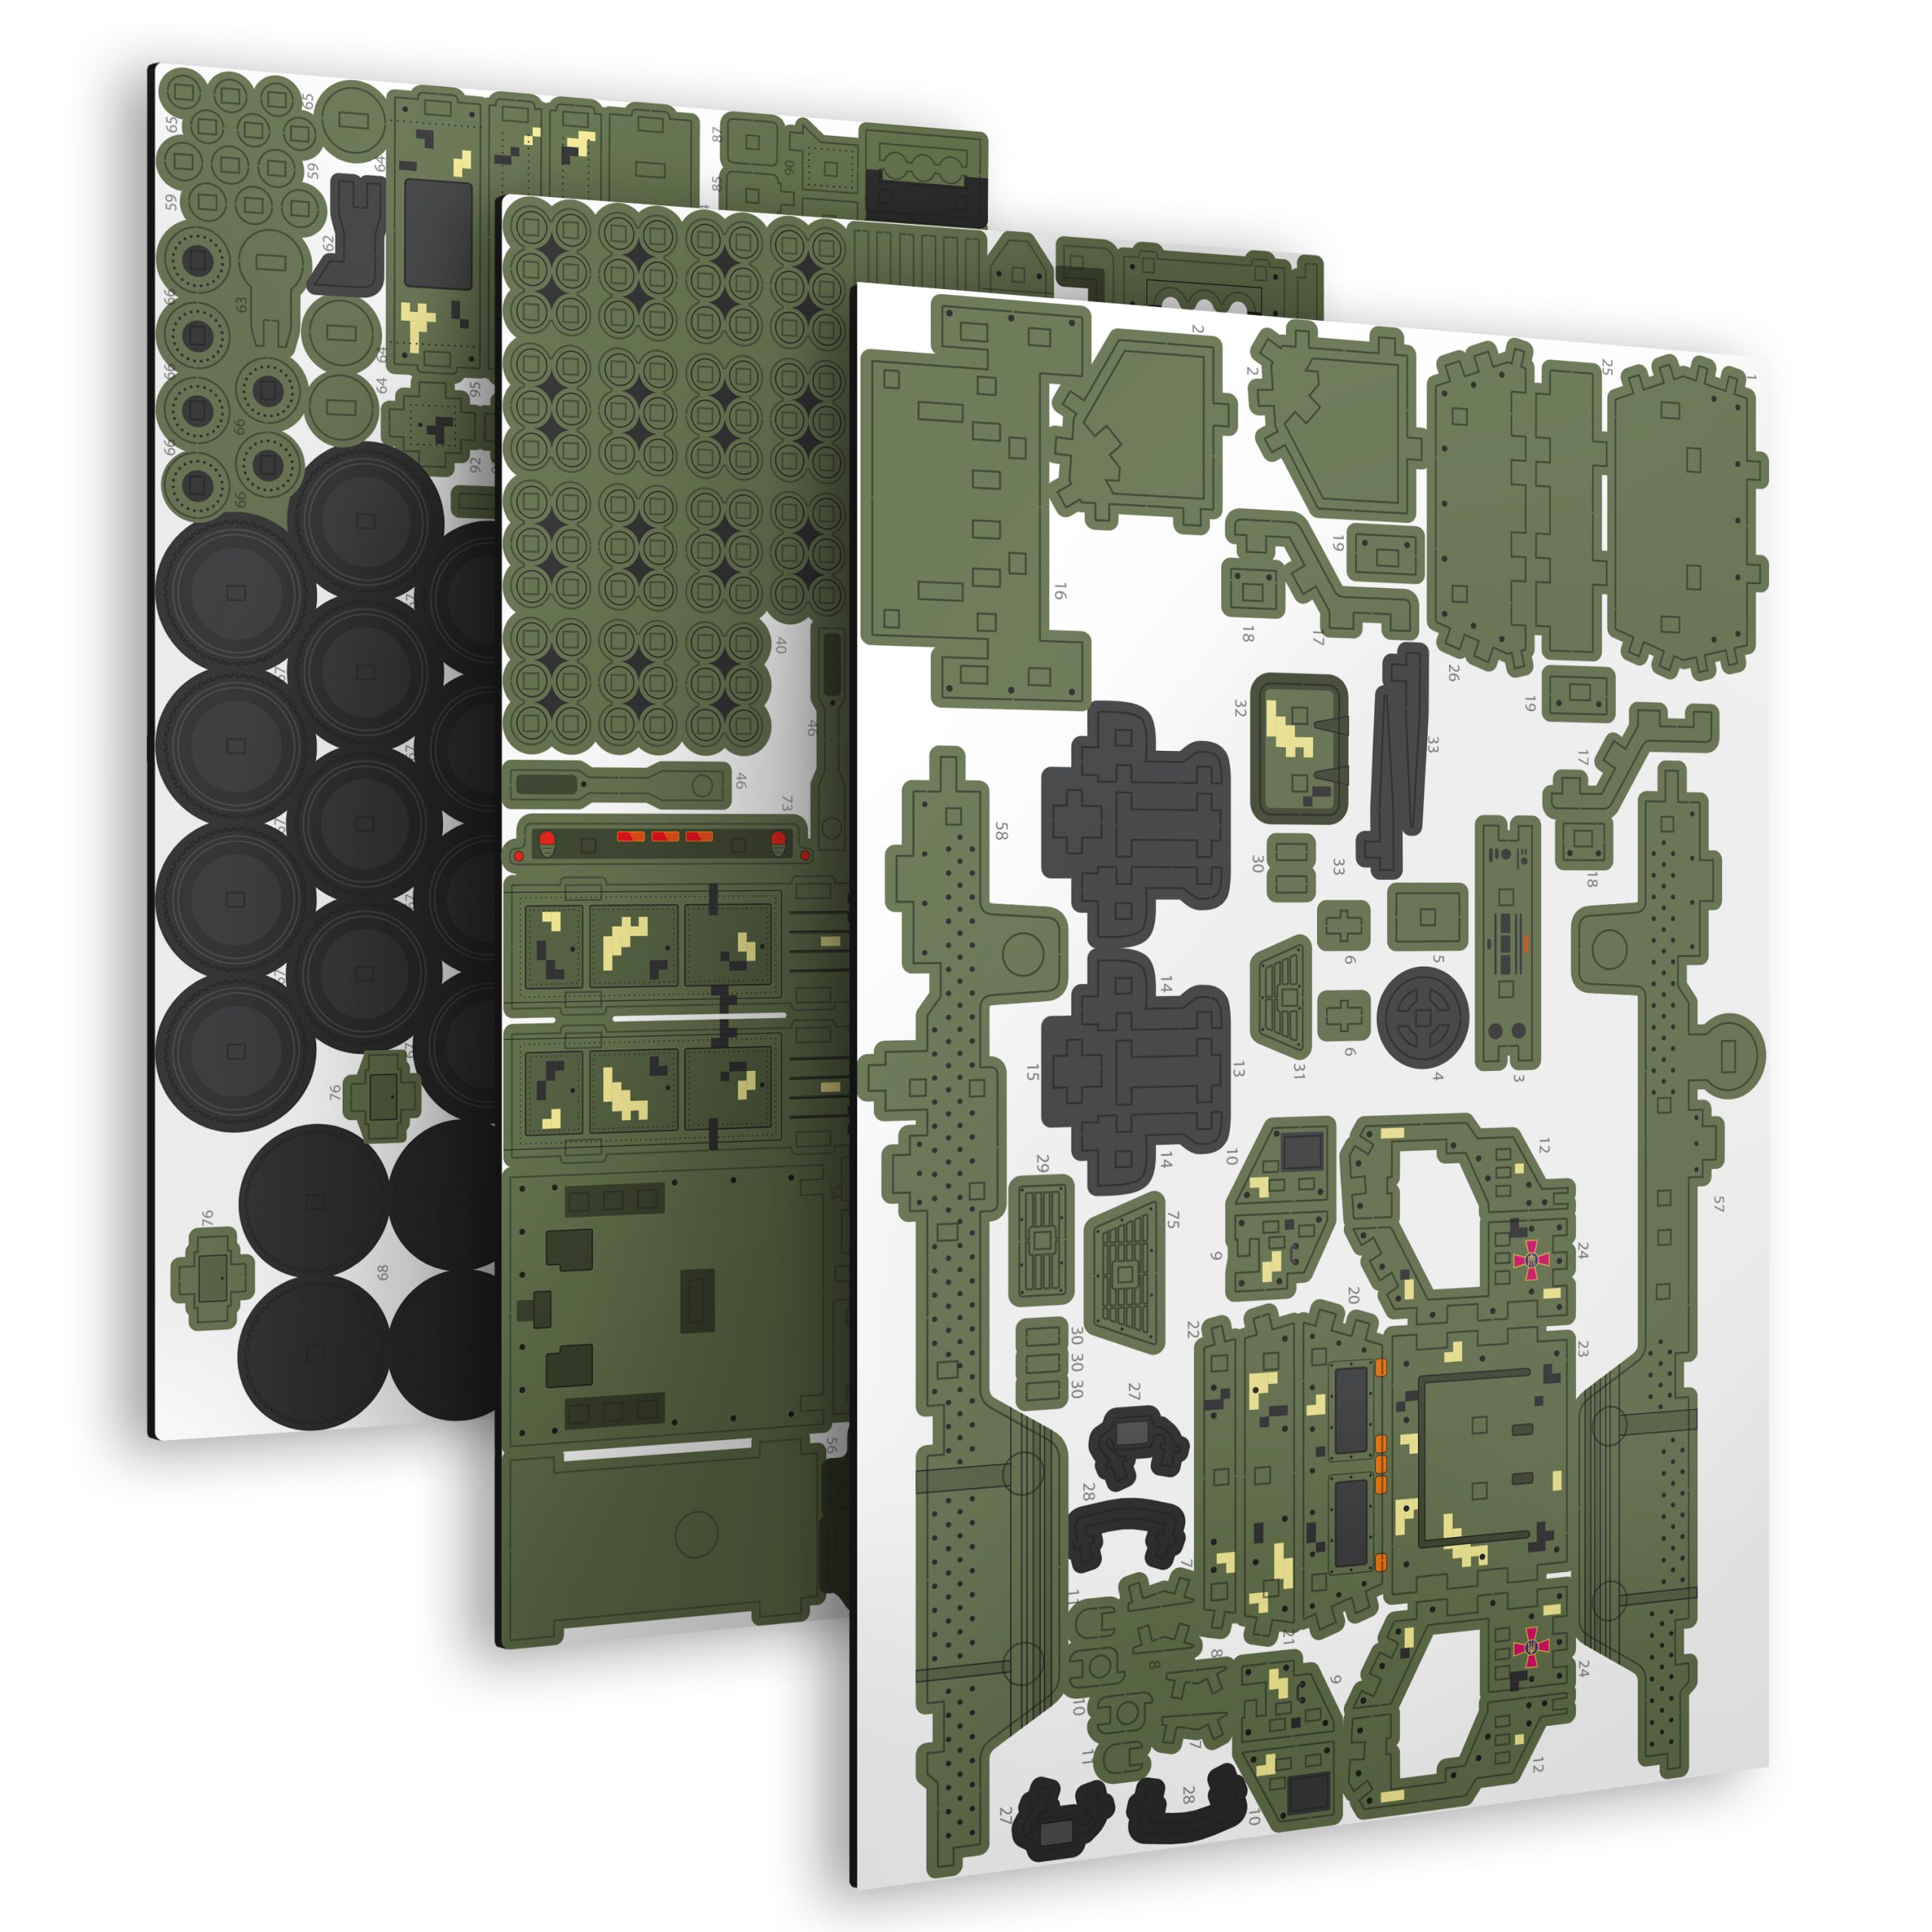 Деревянный 3D Пазл "HIMARS" 235 шт Зелёный Пиксель